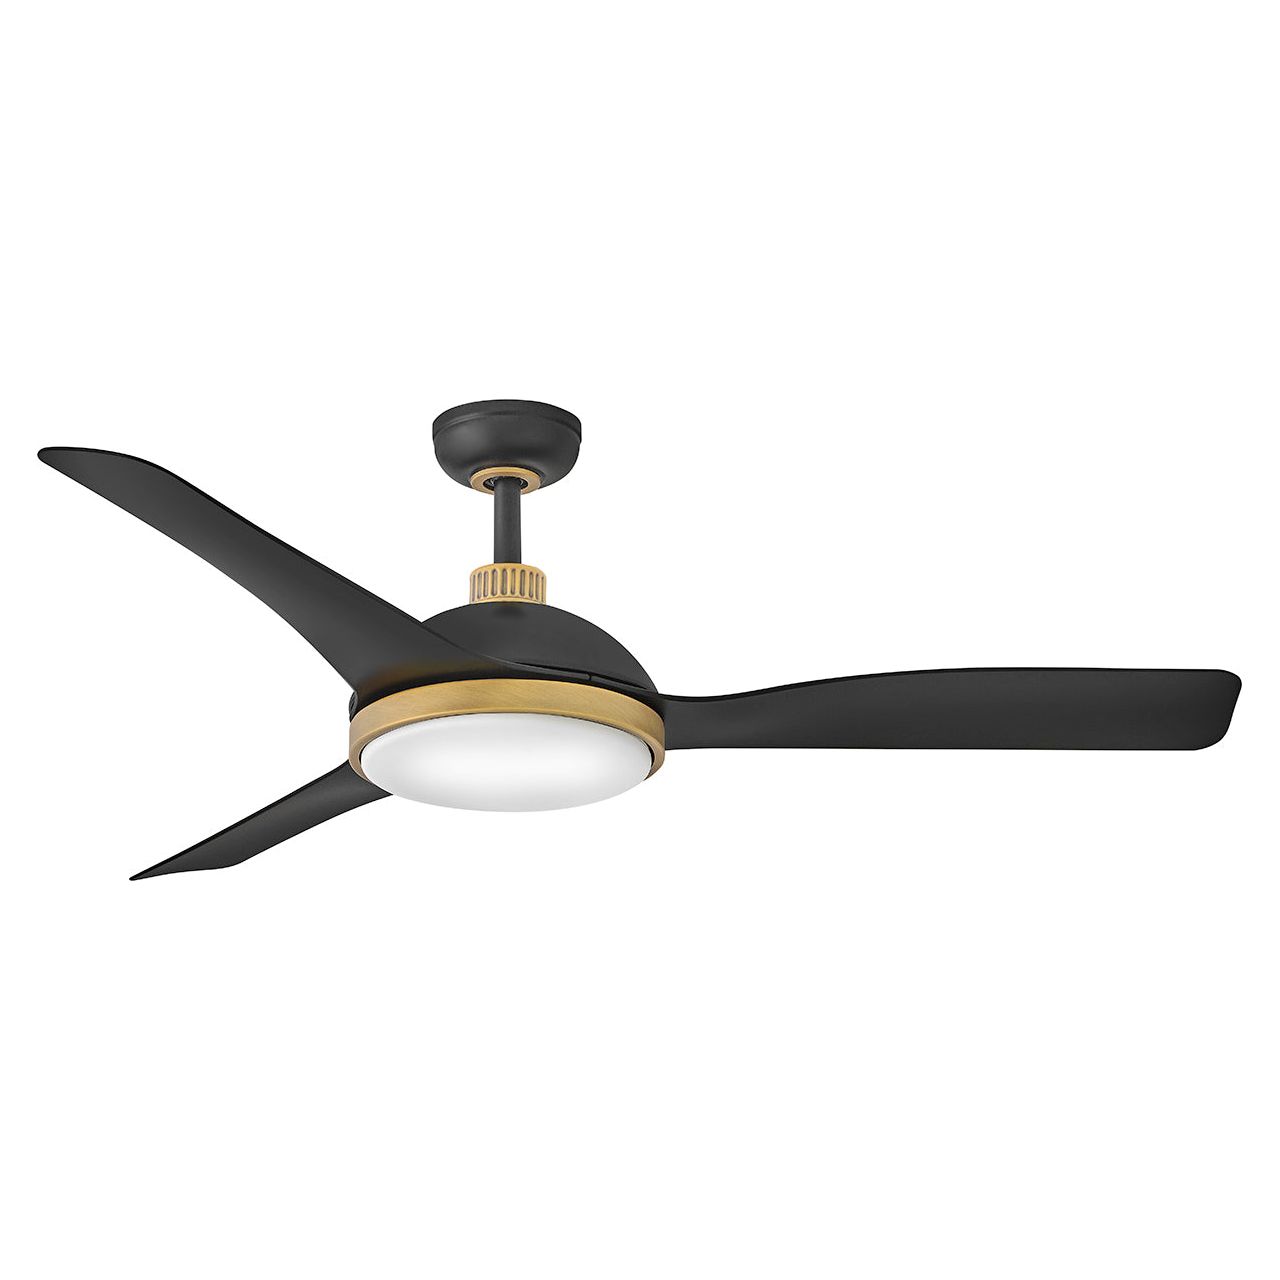 Alba 56" LED Smart Fan